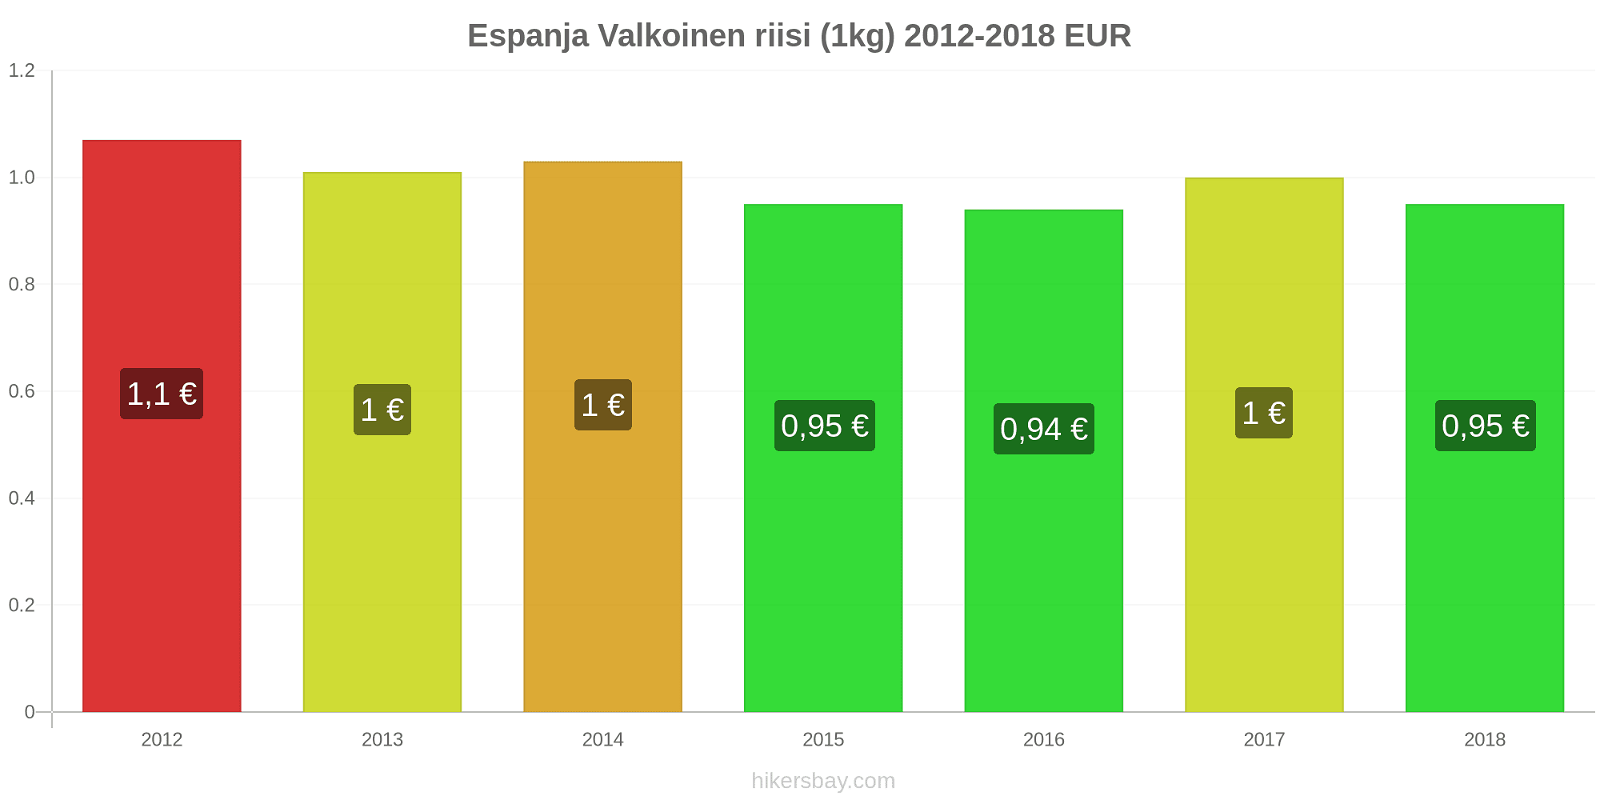 Espanja hintojen muutokset Valkoinen riisi (1kg) hikersbay.com